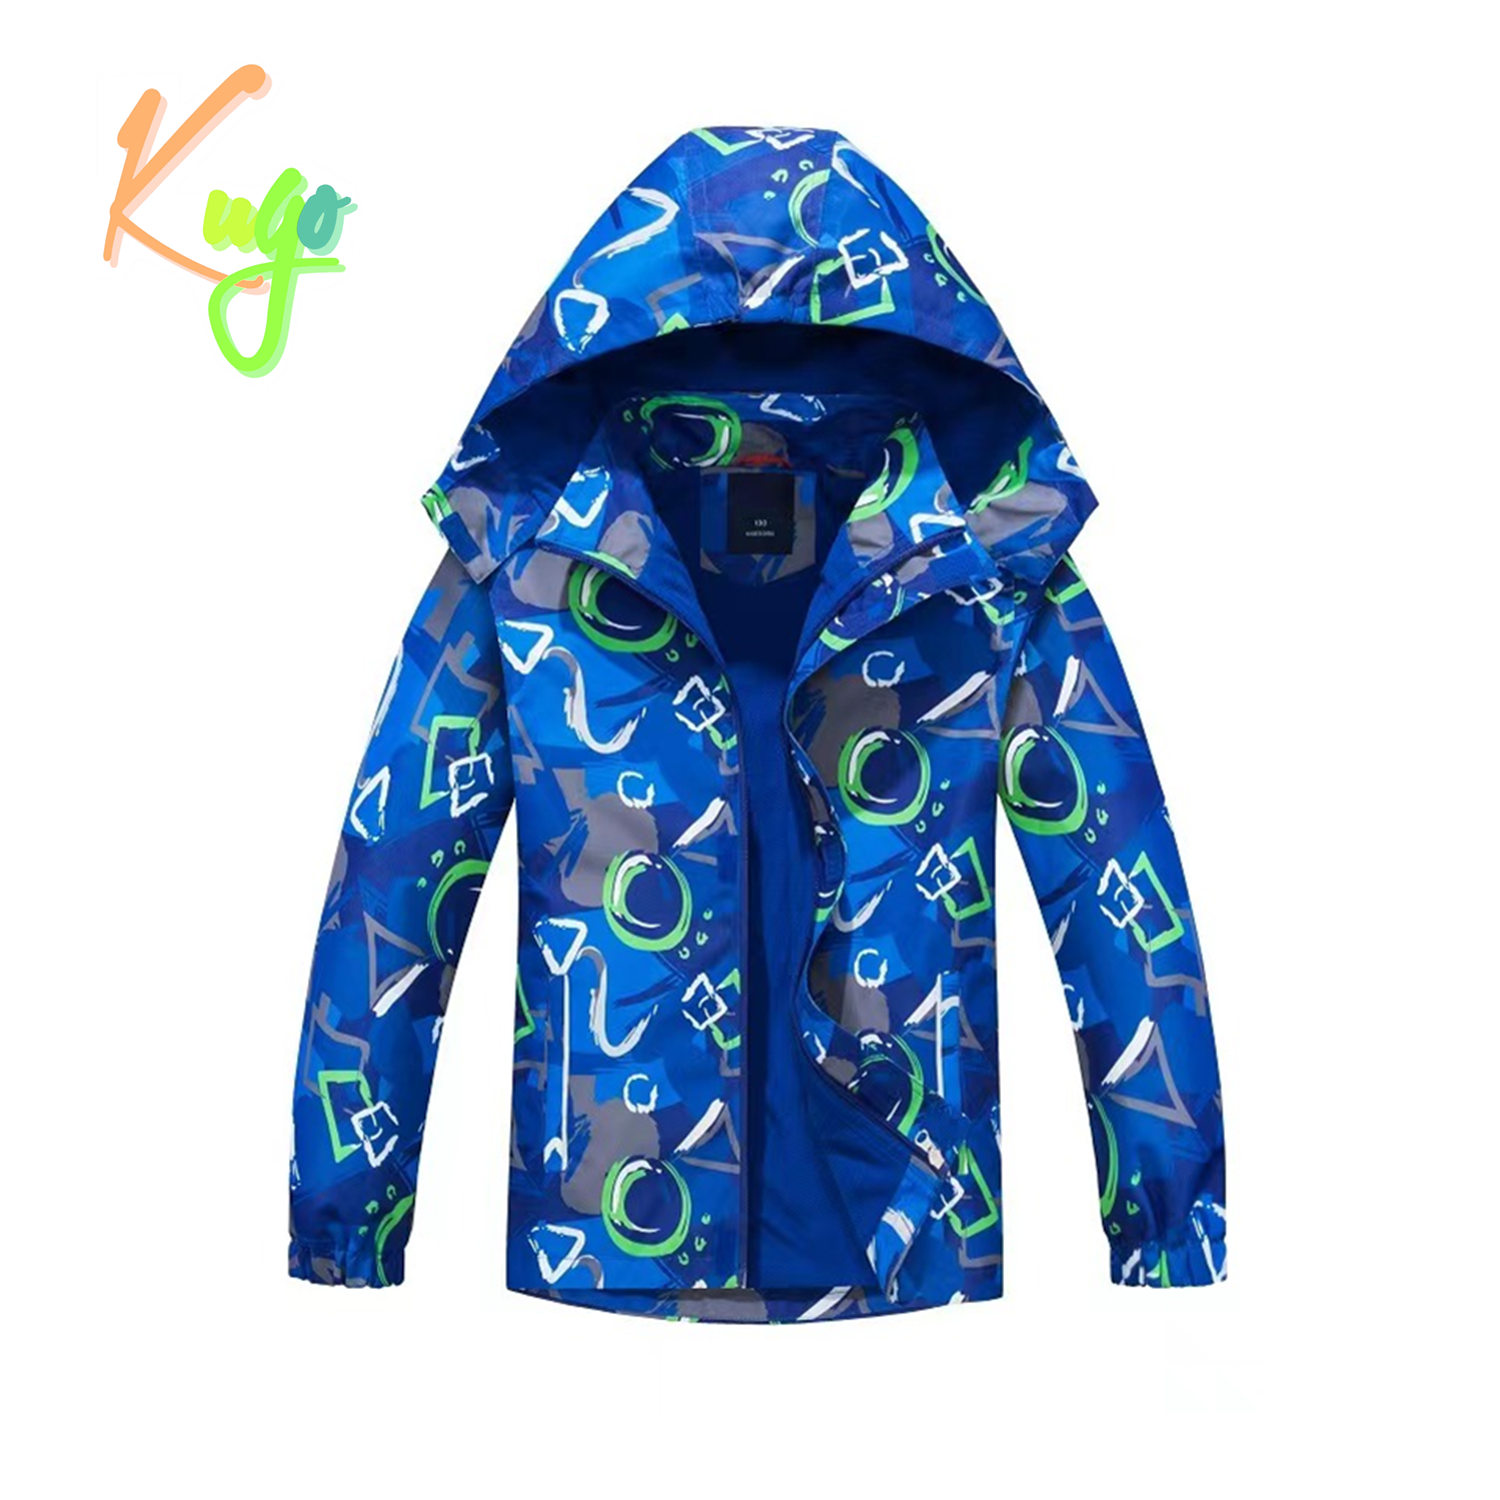 Chlapecká jarní, podzimní bunda, zateplená - KUGO B2836a, modrá Barva: Modrá, Velikost: 98